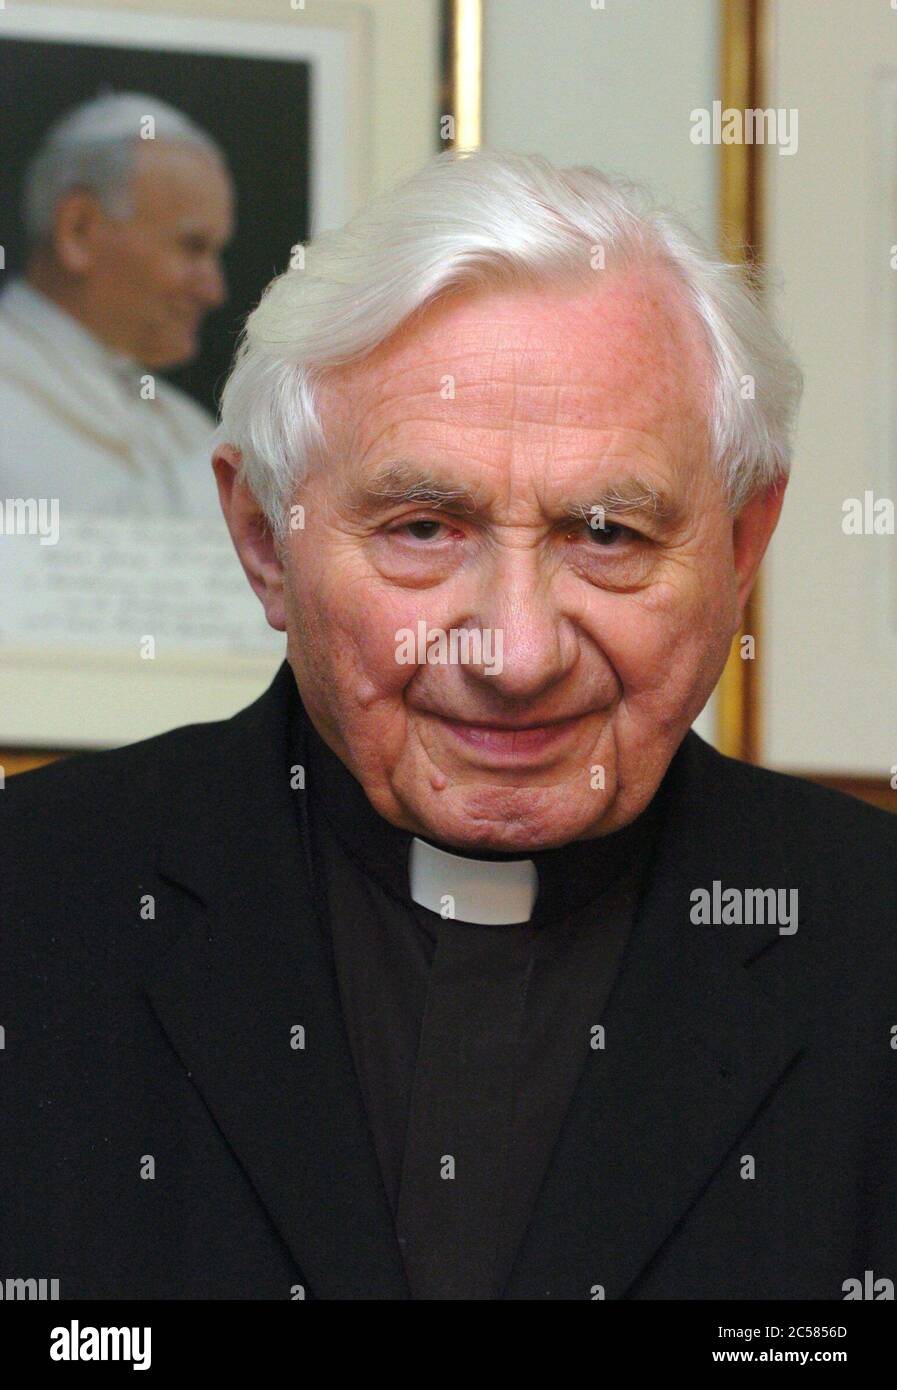 Dpa) - Georg Ratzinger, fratello del nuovo Papa Benedetto XVI, raffigurato  nella sua casa a Regensburg, Germania, martedì, 19 aprile 2005. Fino alla  fine, Ratzinger non crede che il suo giovane fratello